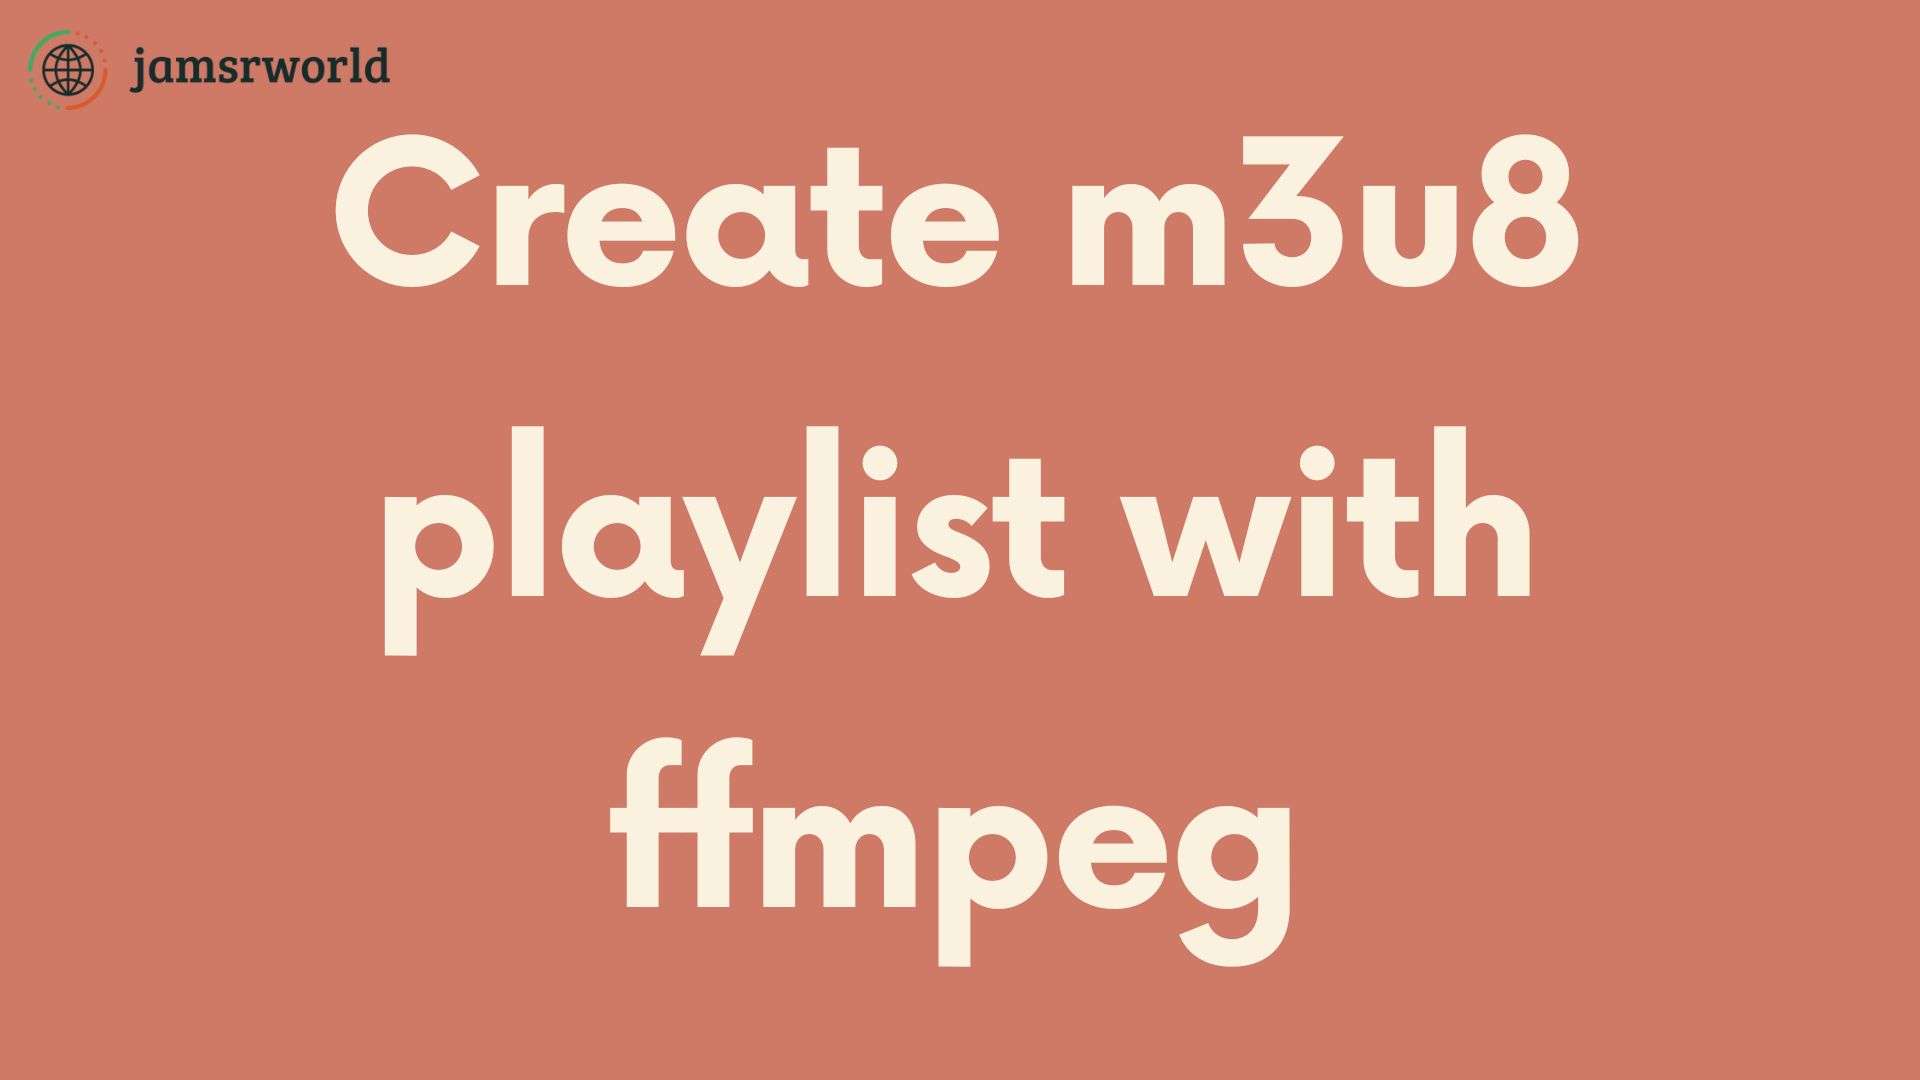 How to create a m3u8 playlist